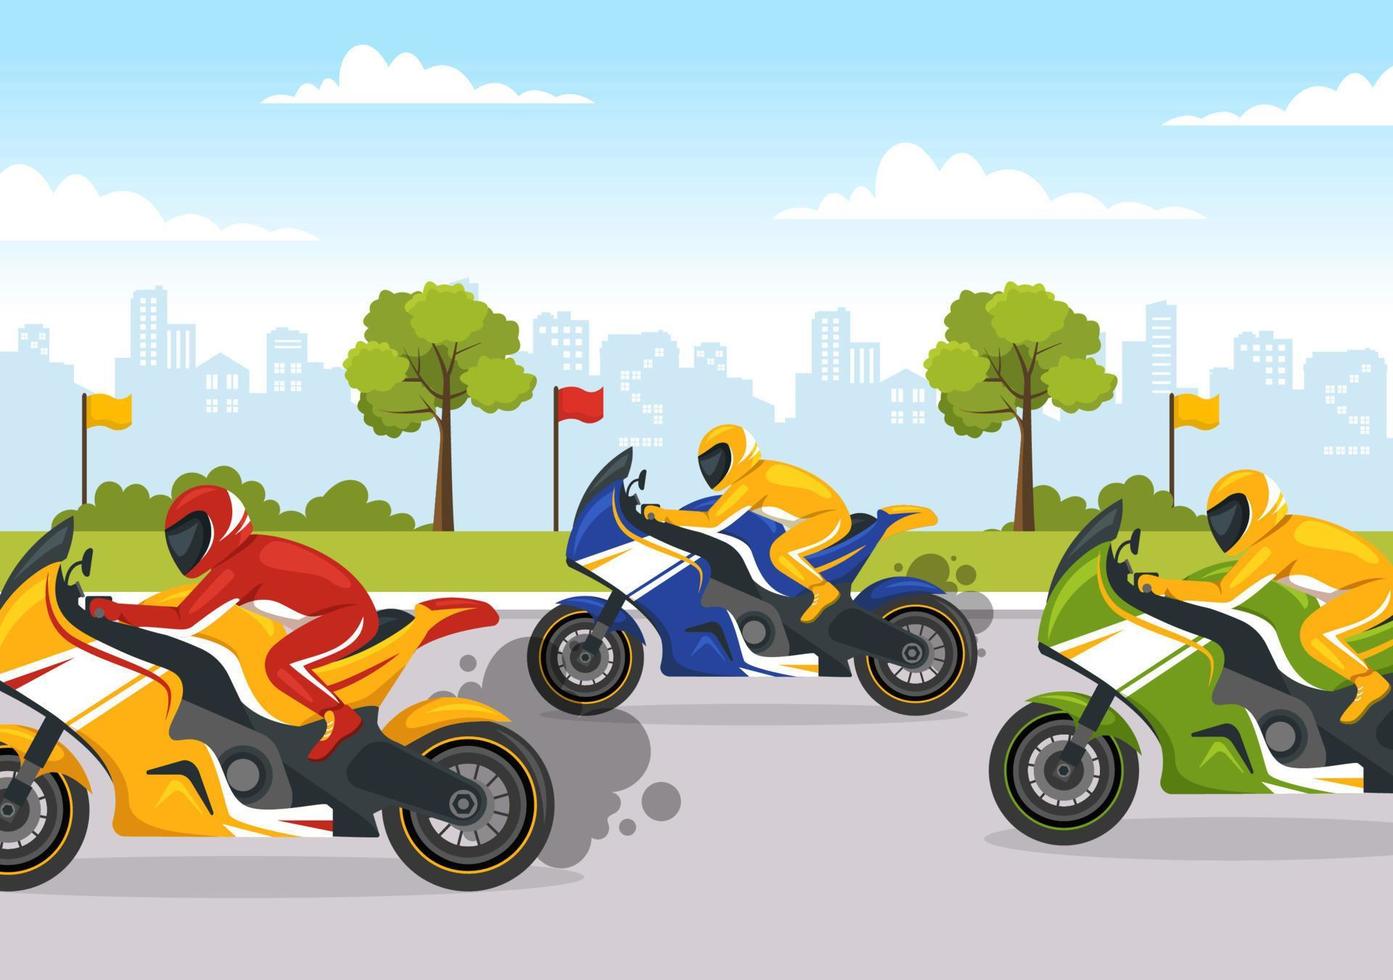 campeonato de corrida de motocicleta na ilustração da pista de corrida com motor de pilotagem para a página inicial em modelos desenhados à mão de desenhos animados planos vetor